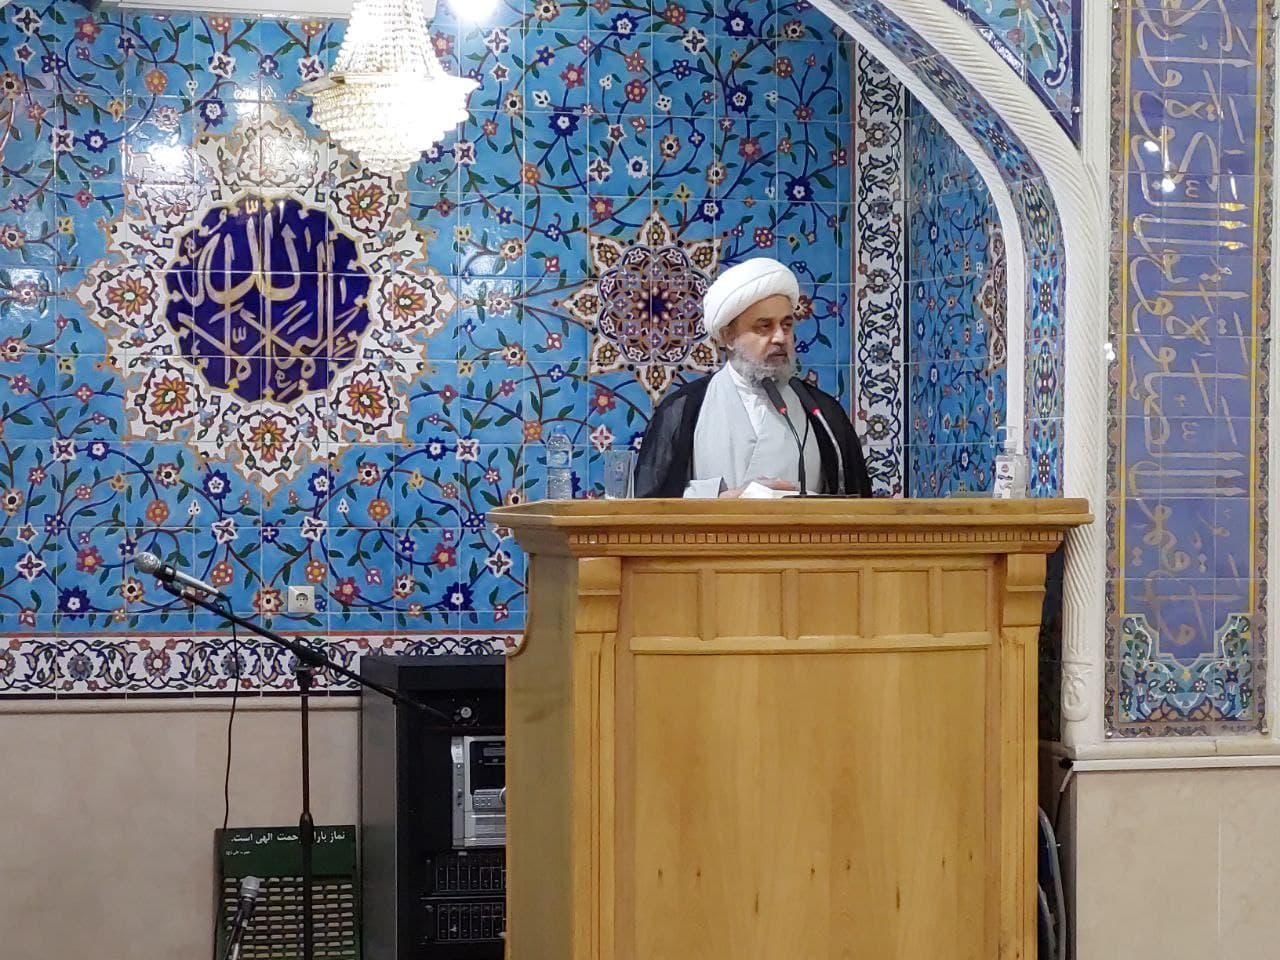 سخنرانی دبیرکل مجمع جهانی تقریب در جمع نمازگزاران اهل سنت مسجد رسول اکرم(ص) شیراز